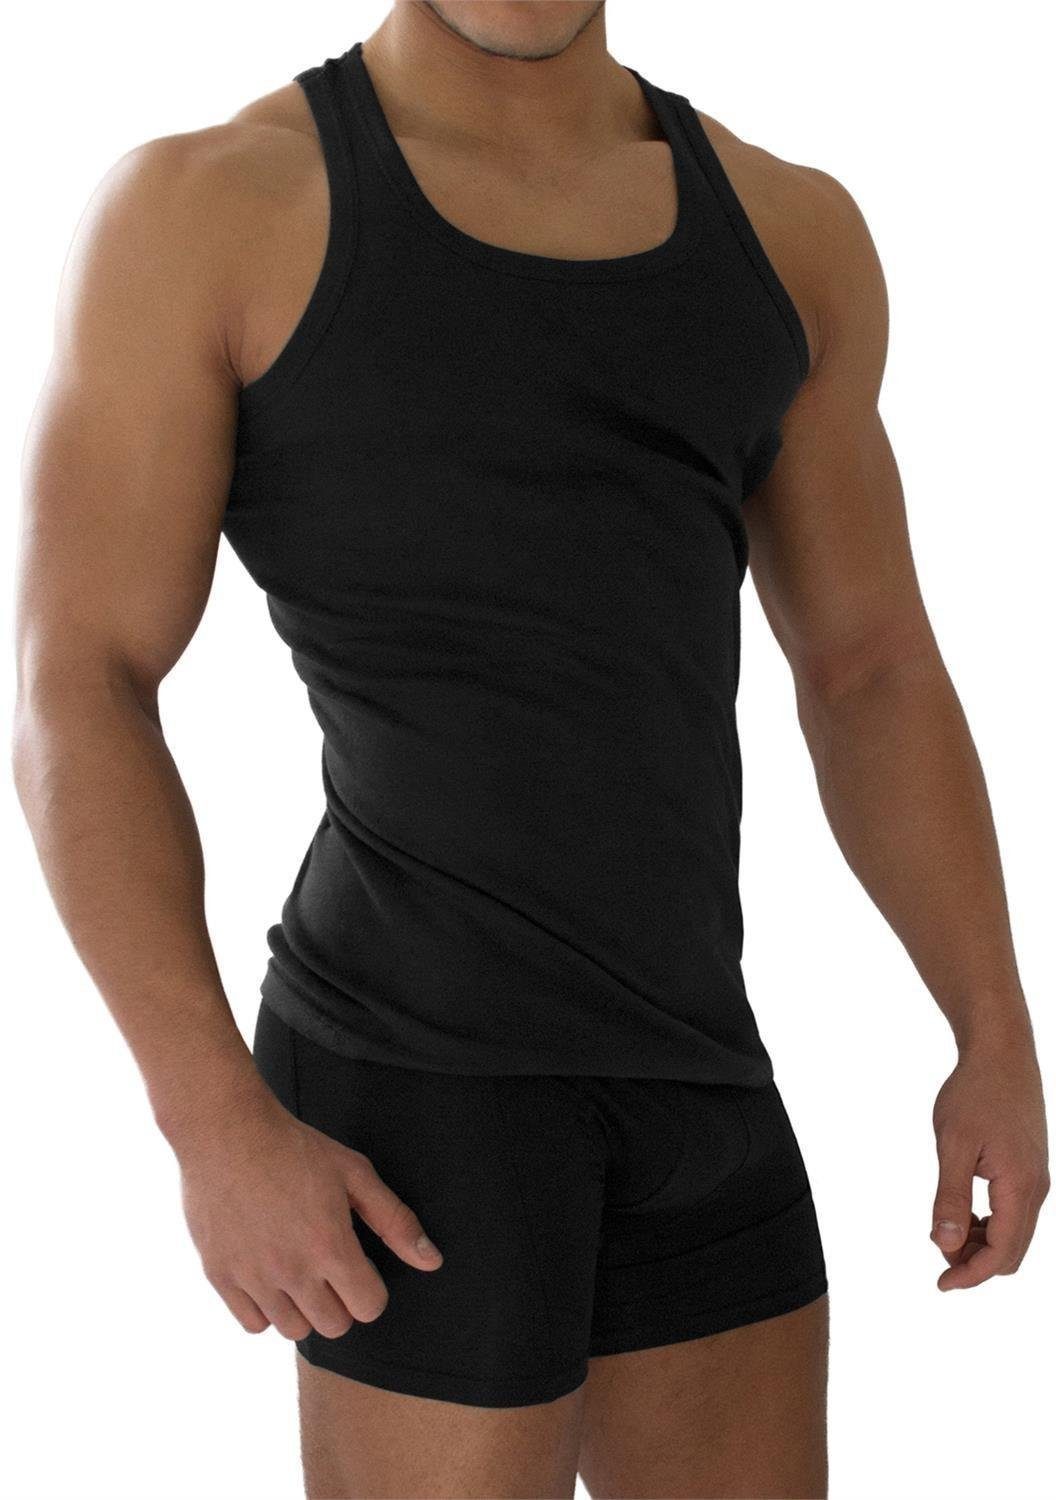 normani Unterhemd 4 Stück Herren-Unterhemd Feinripp Feinrippung Schwarz mit